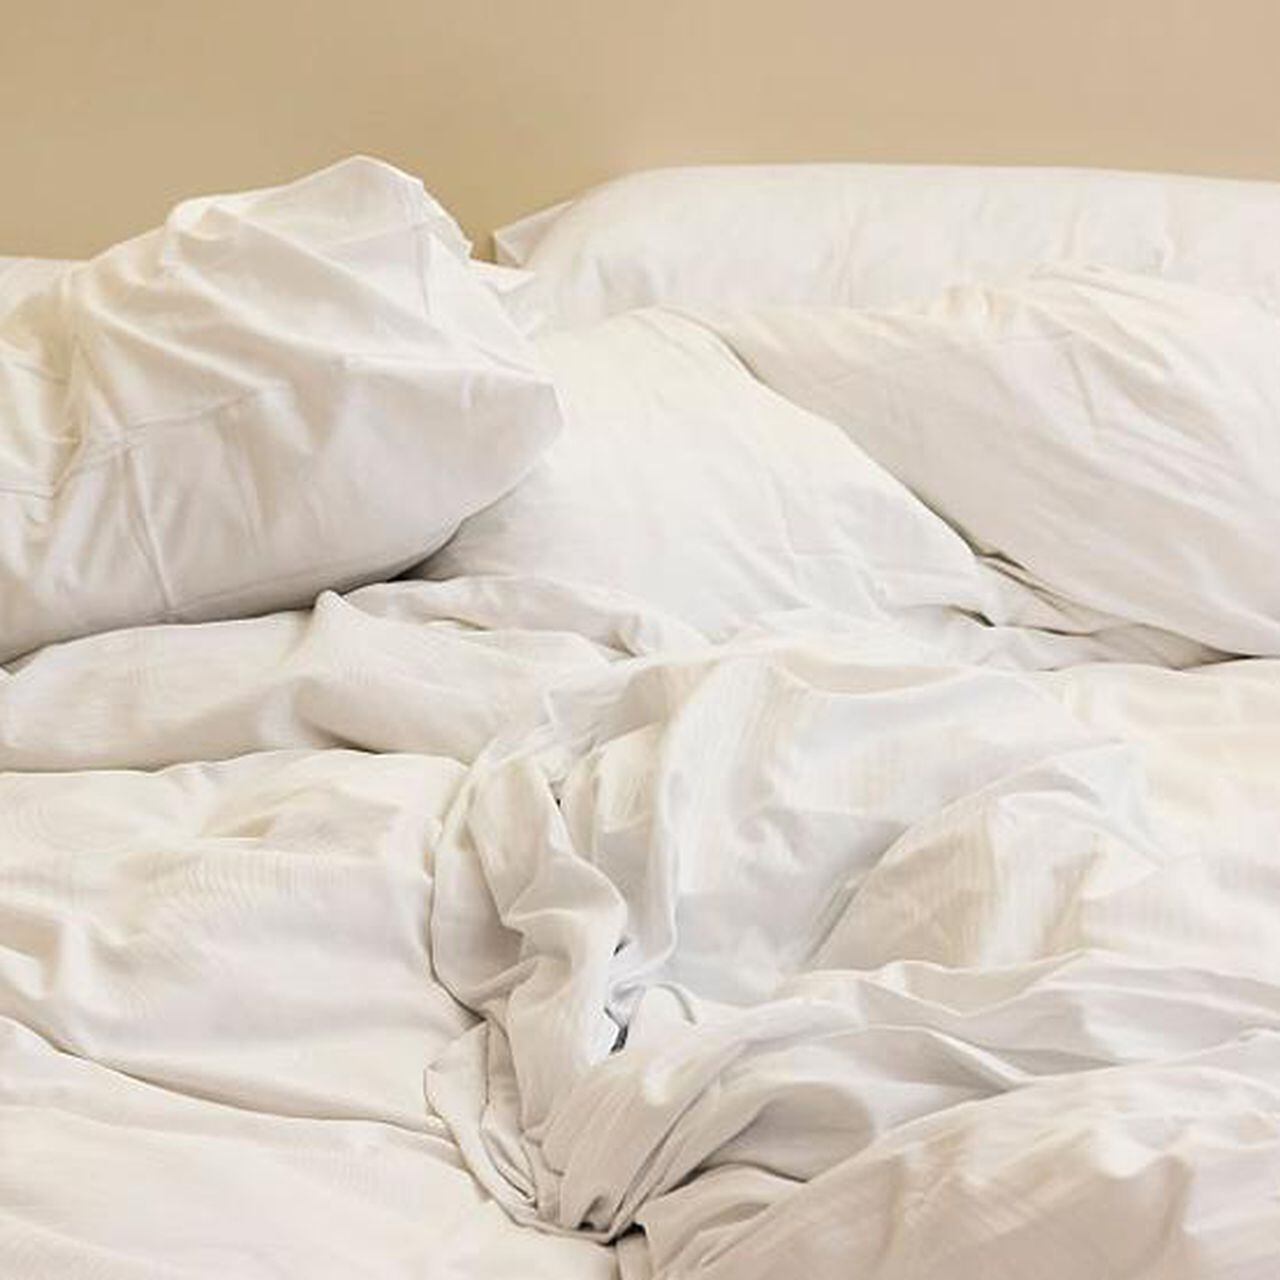 Trucos para evitar que las sábanas se salgan de la cama